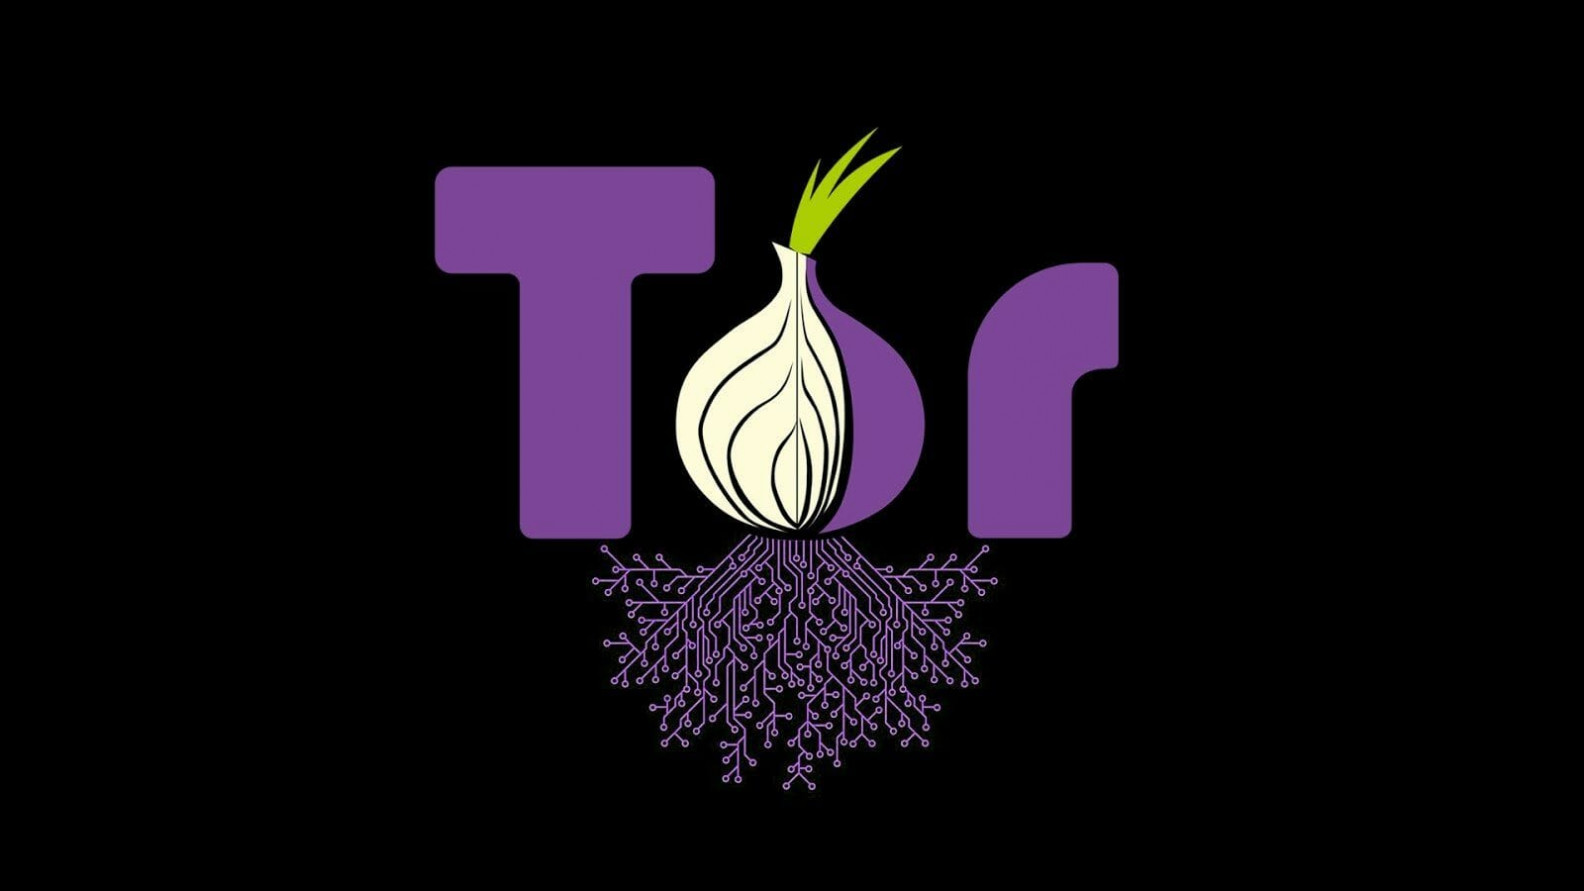 Mi az a Tor böngésző?